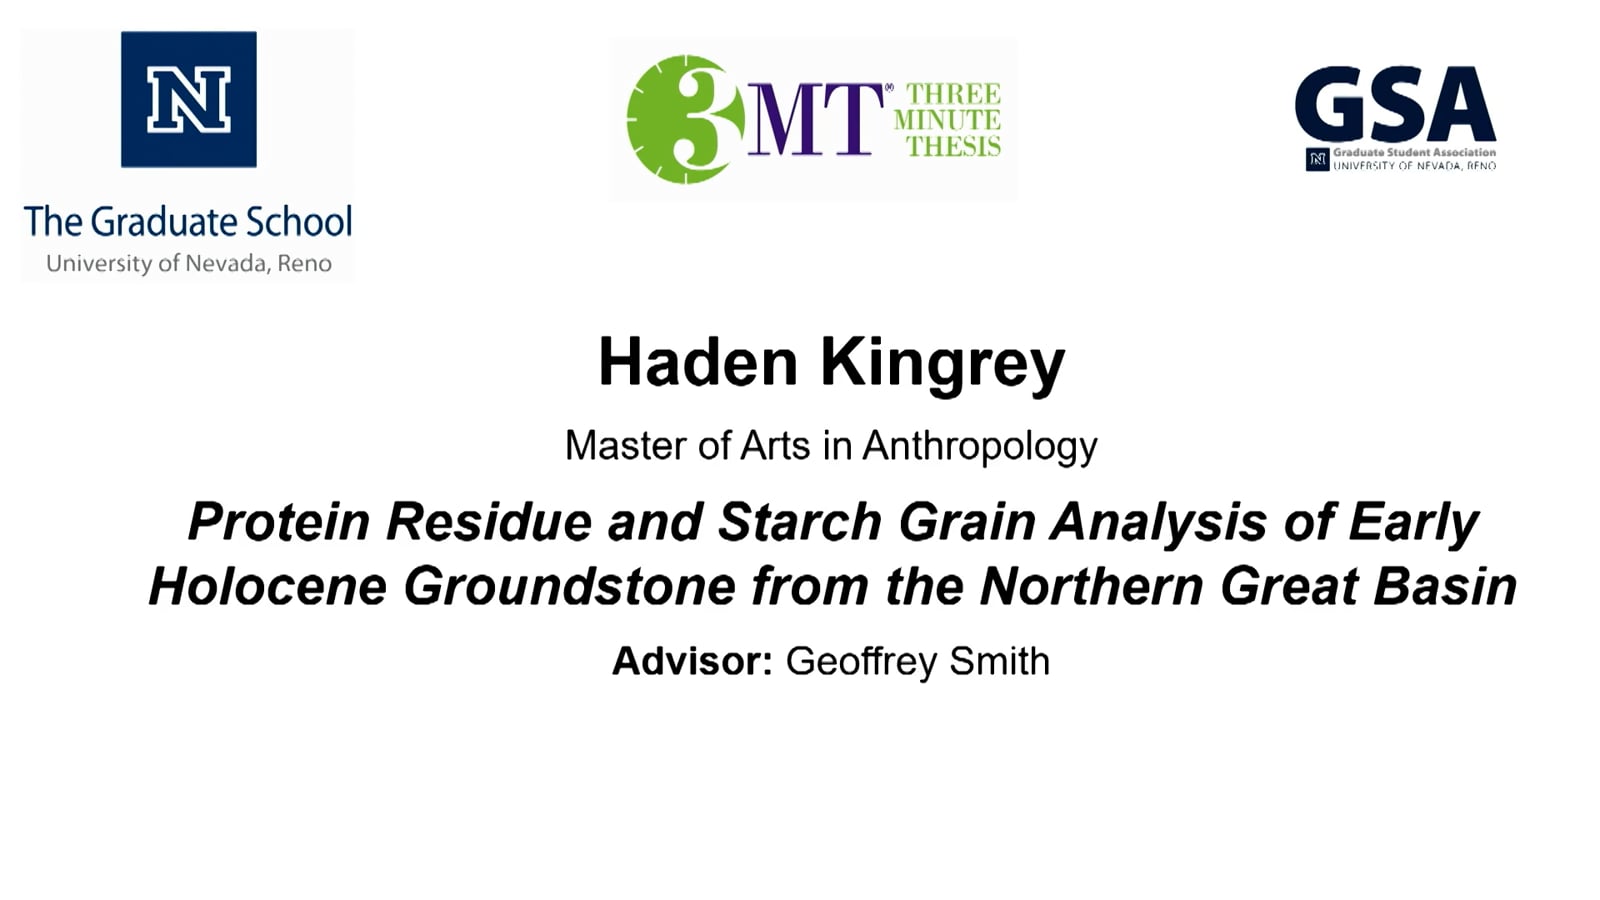 Thumbnail of Haden Kingrey's slide